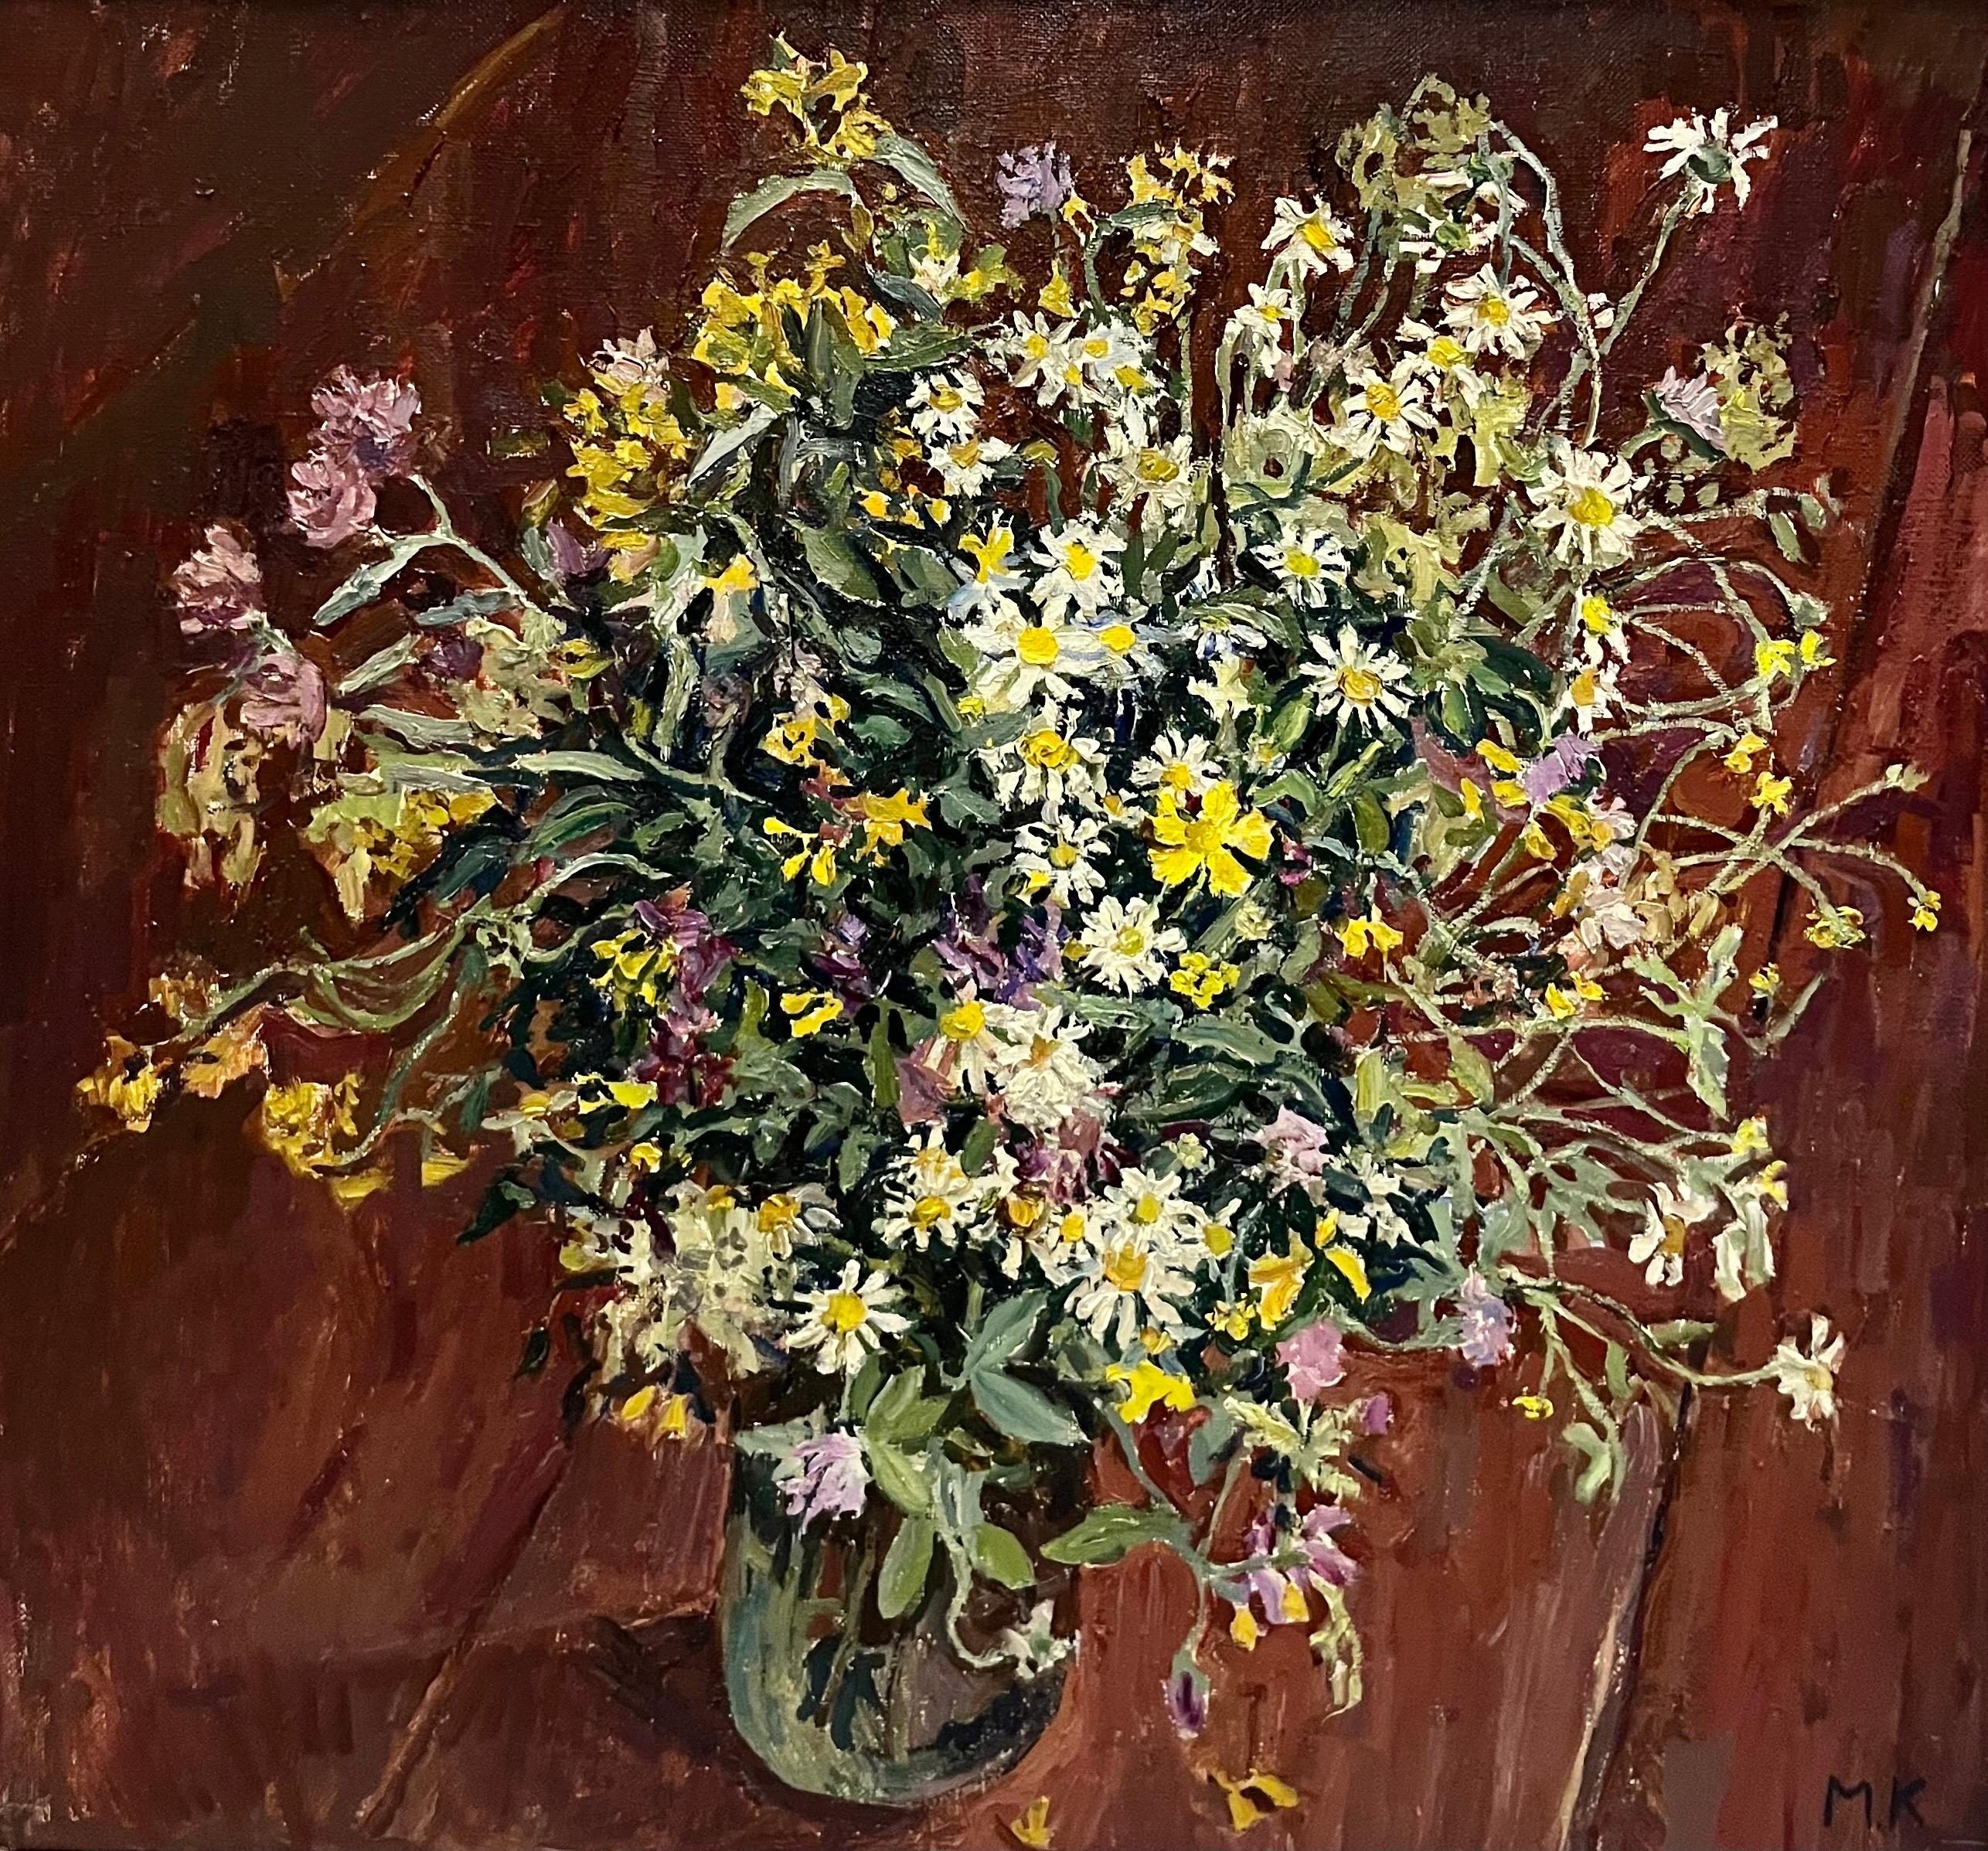 Mazzo di fiori „ Olio“, cm.80 x 74  1997 